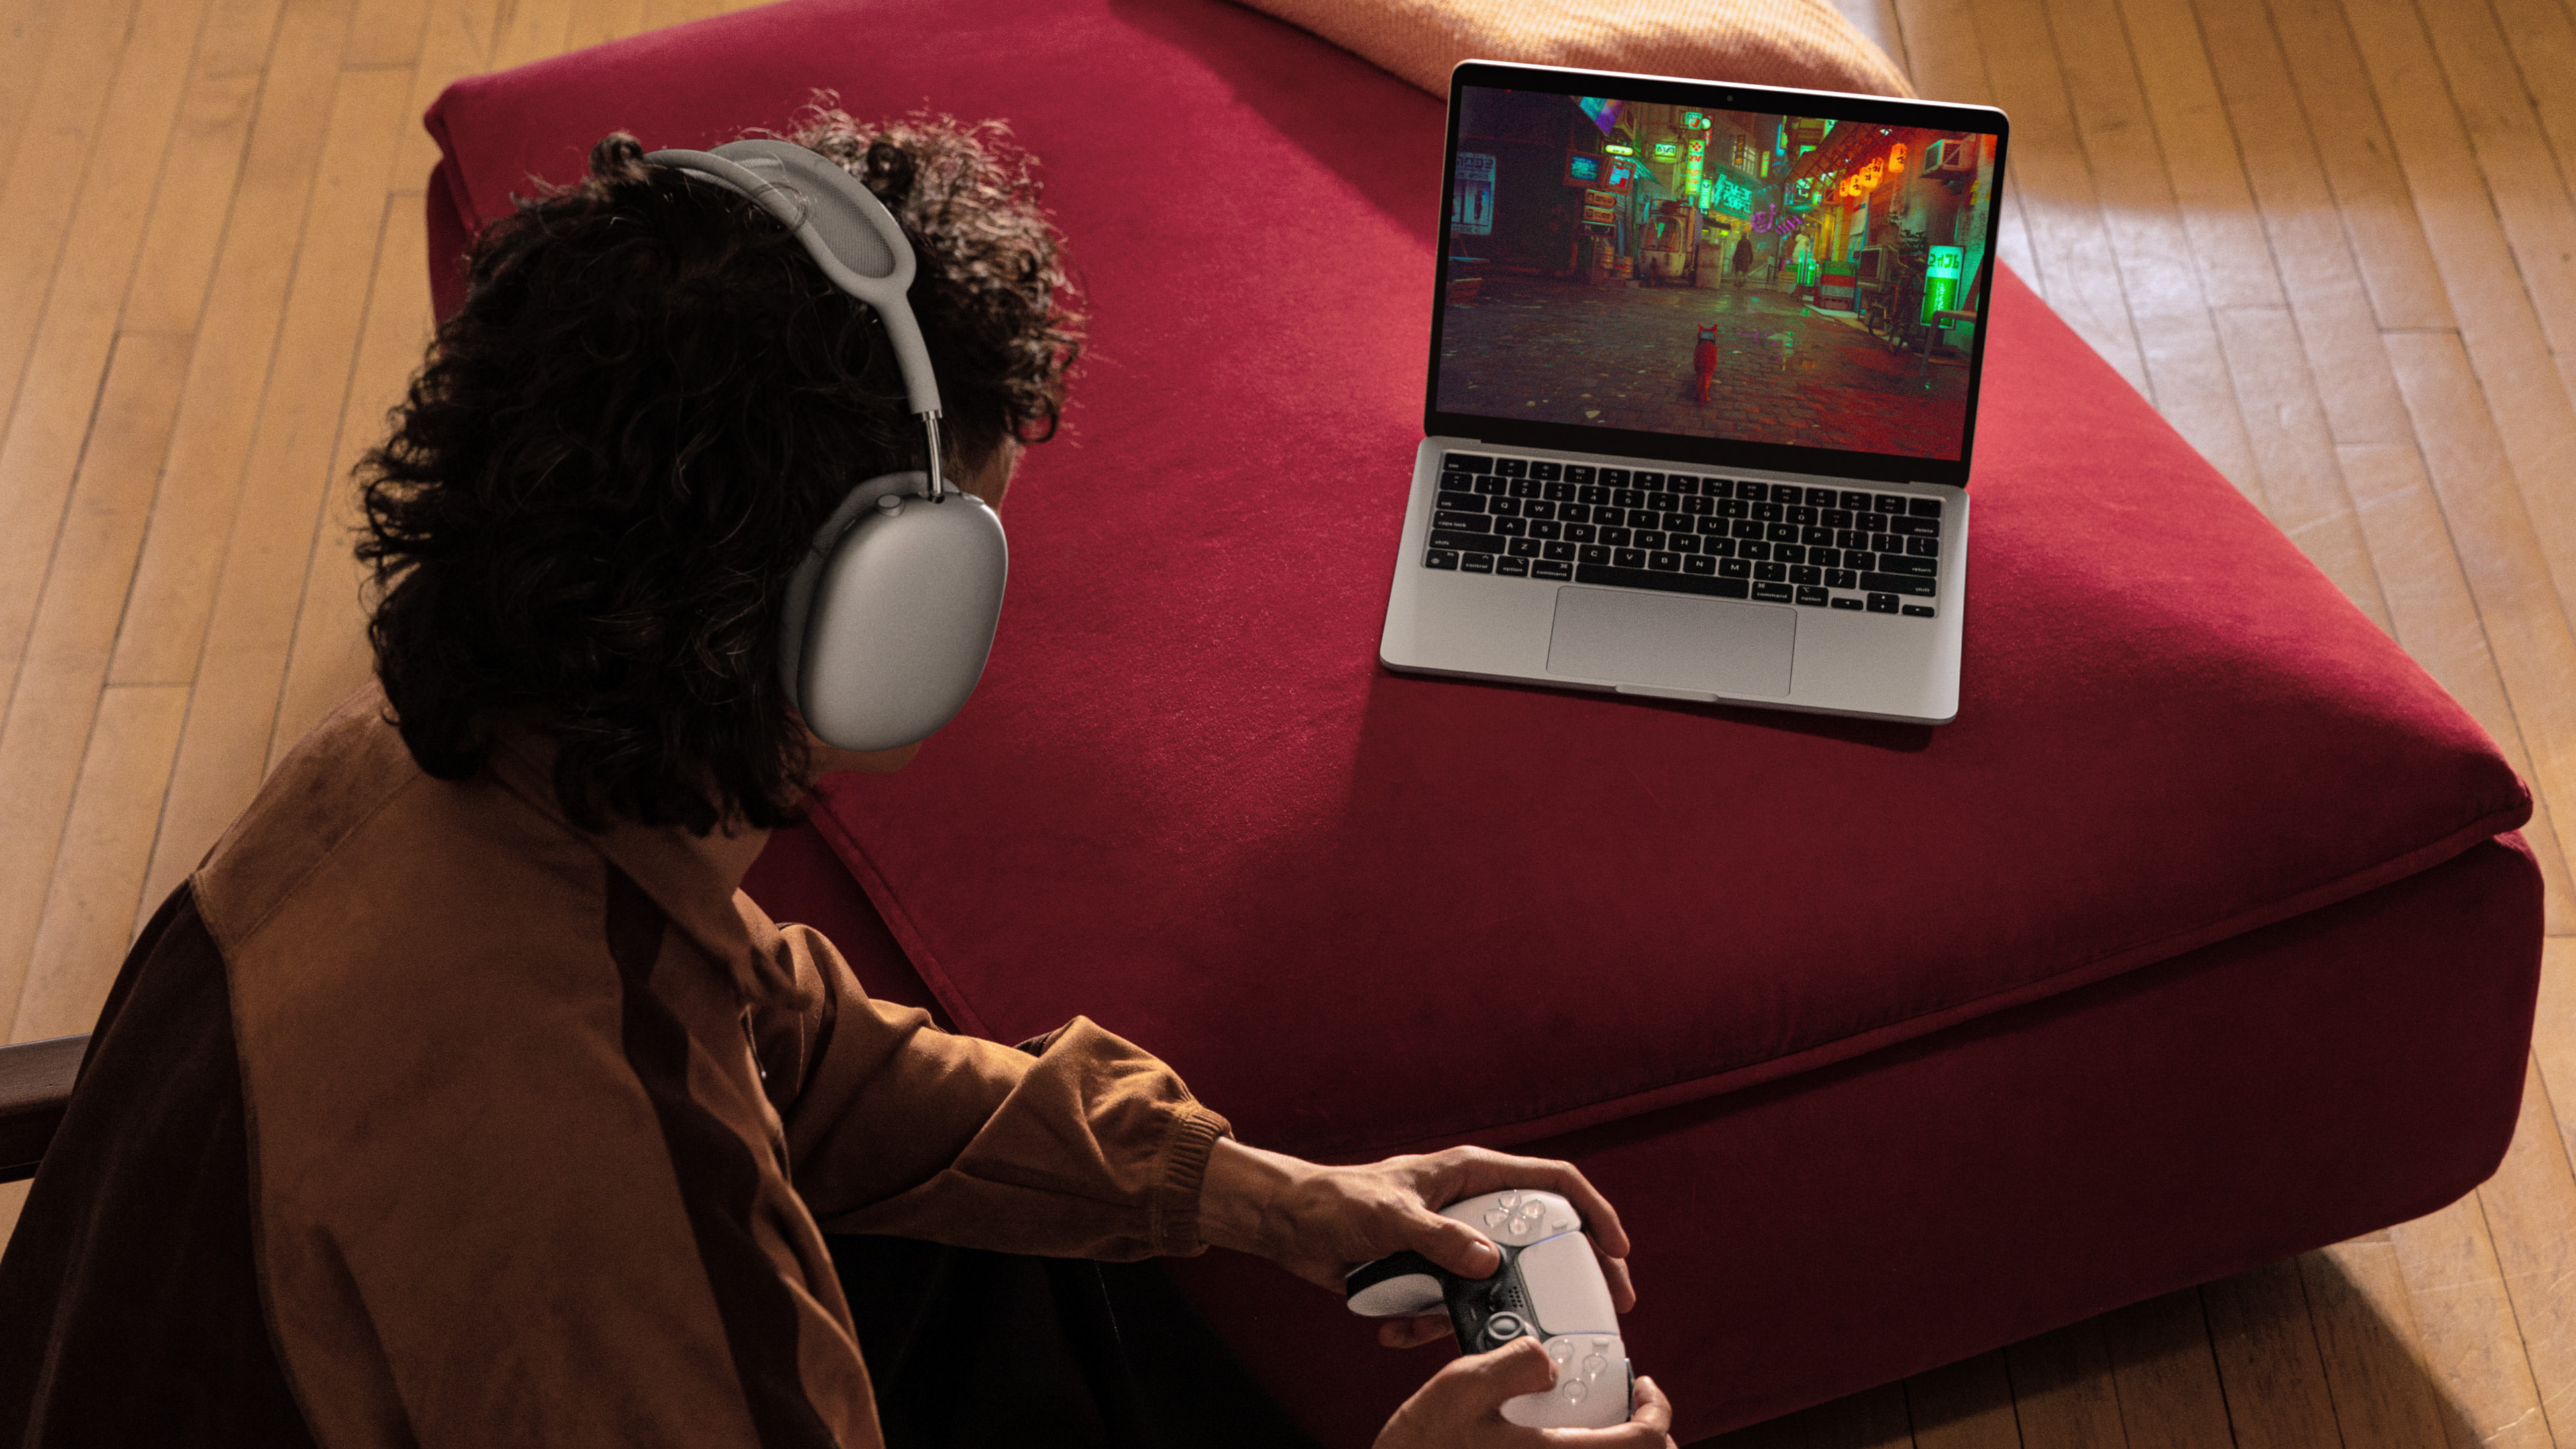 Apple-MacBook-Air-lifestyle-gaming-240304.jpg